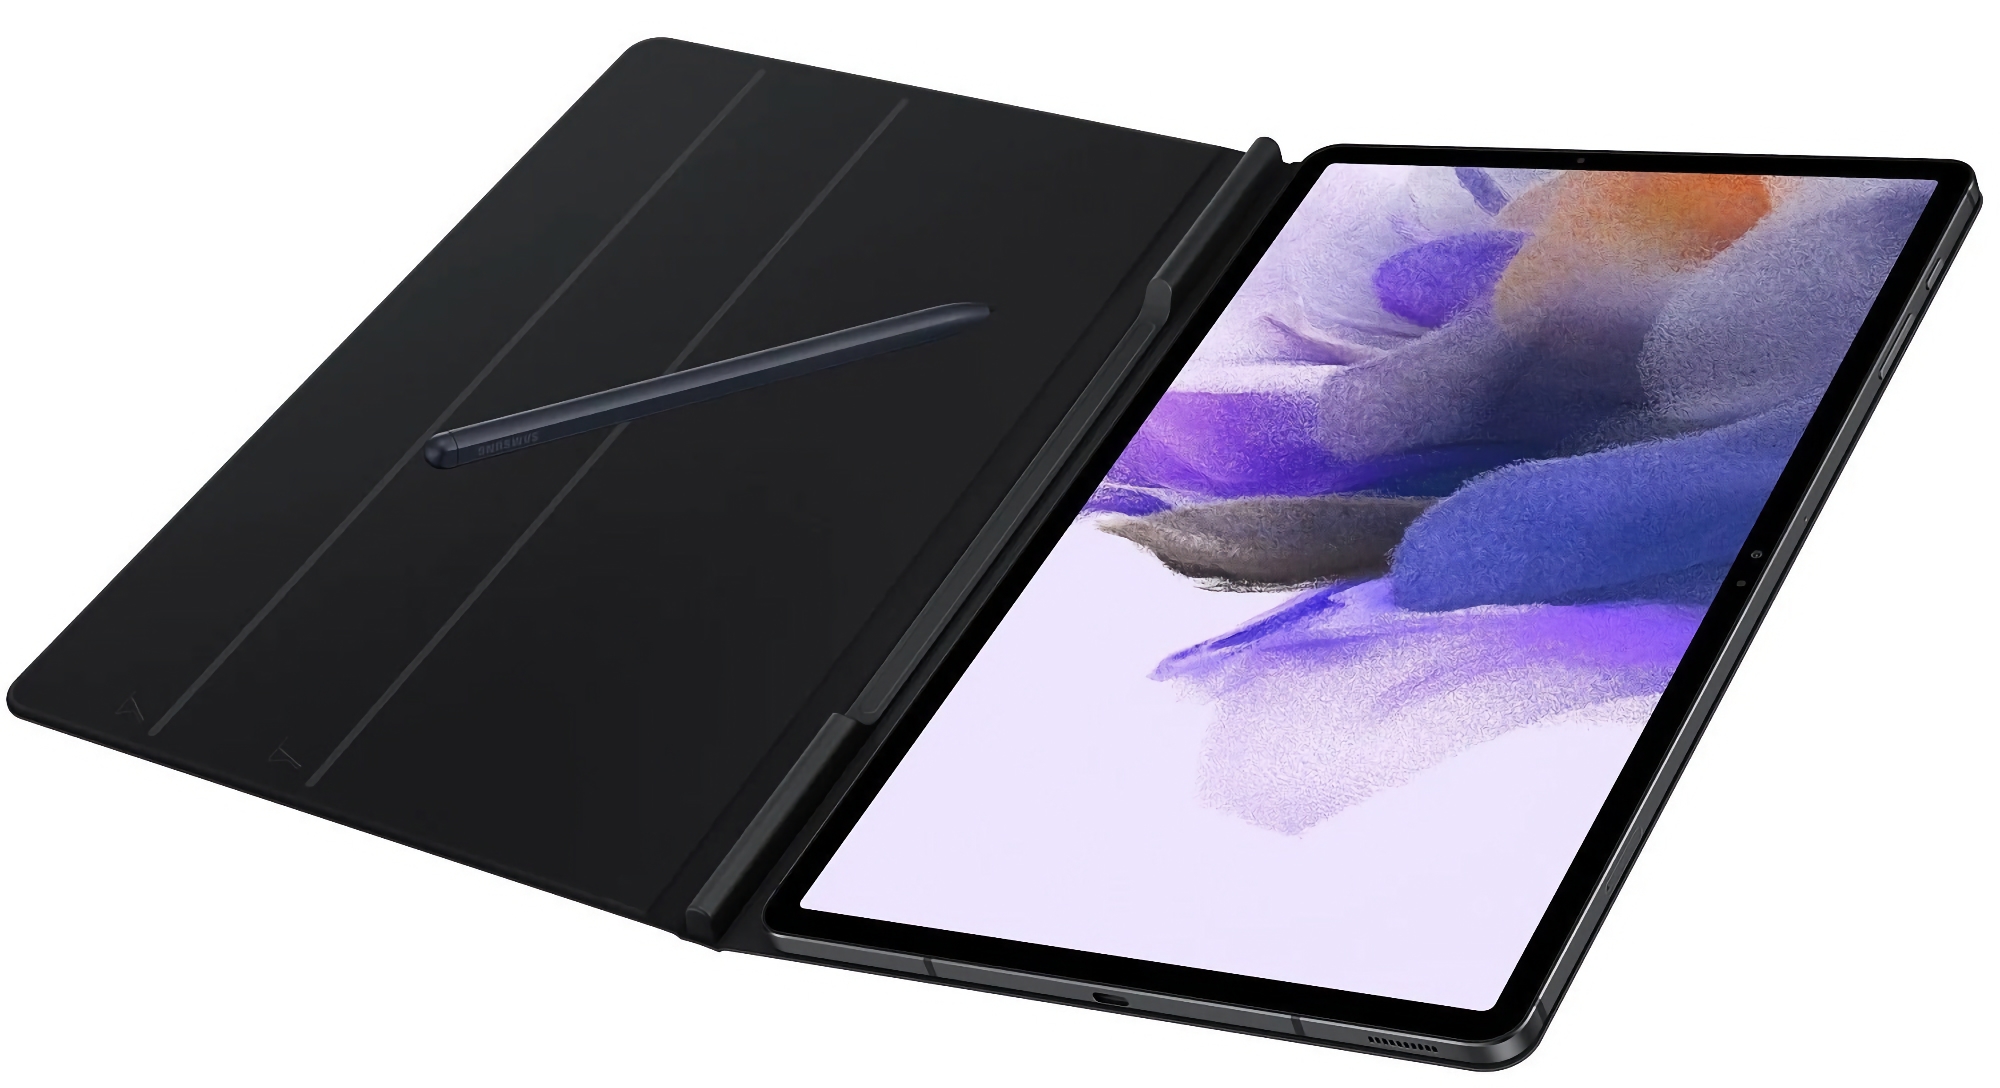 Samsung Galaxy Tab S7 FE bei Amazon bis zu 100€ günstiger: Tablet mit 12,4″ Display, Snapdragon 750G Chip und S Pen inklusive